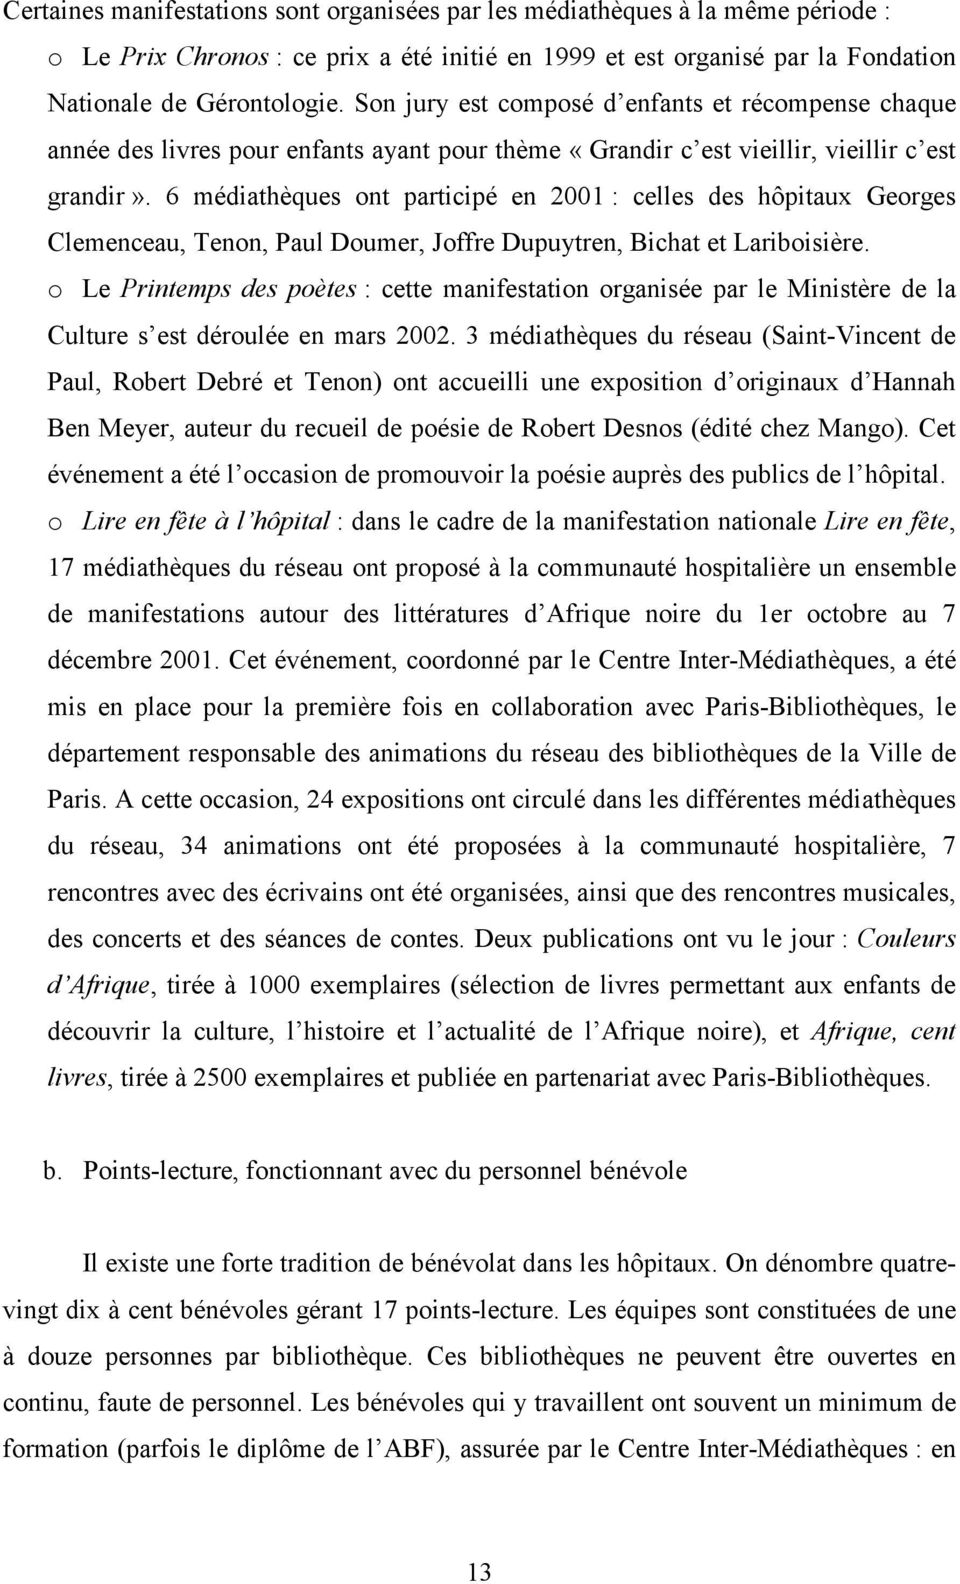 6 médiahèques on paricipé en 2001 : celles des hôpiaux Georges Clemenceau, Tenon, Paul Doumer, Joffre Dupuyren, Bicha e Lariboisière.